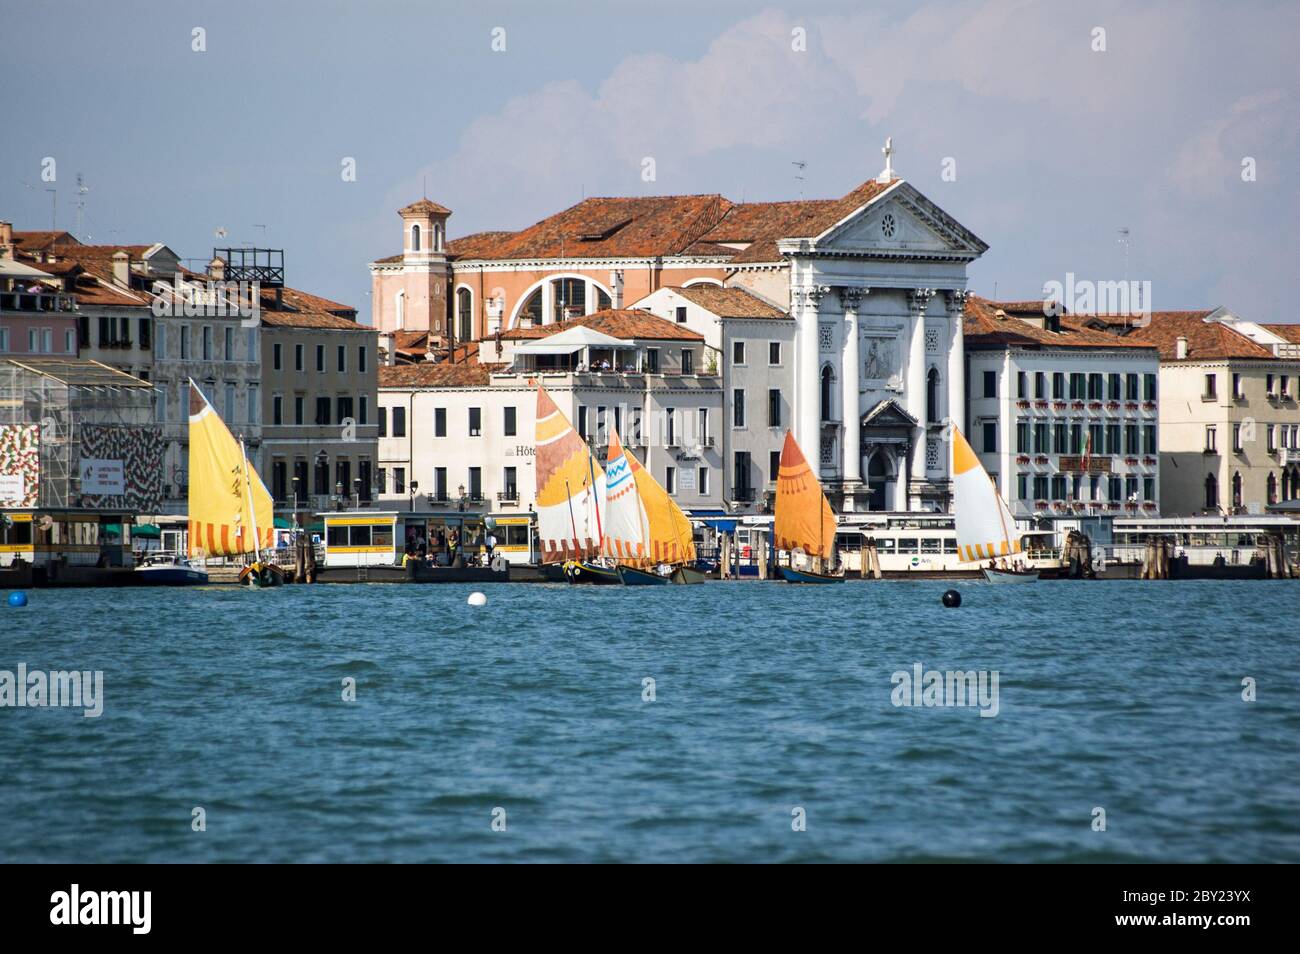 Venezia, Italia - 12 giugno 2011: Squadre provenienti dalle quattro storiche repubbliche marittime italiane gareggiano nella loro regata annuale. Foto Stock